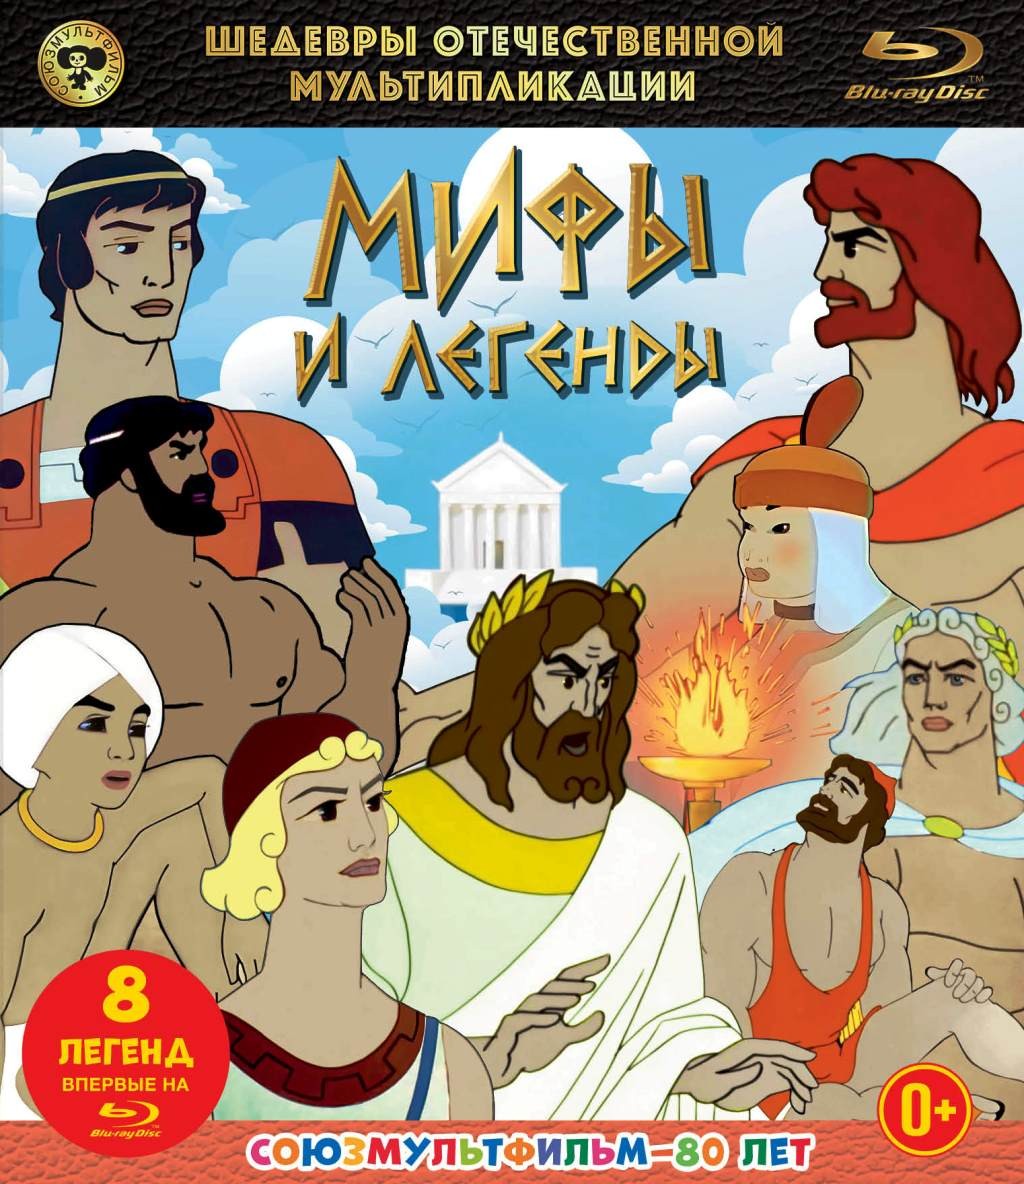 Шедевры отечественной мультипликации: Мифы и легенды. Сборник мультфильмов (Blu-ray)